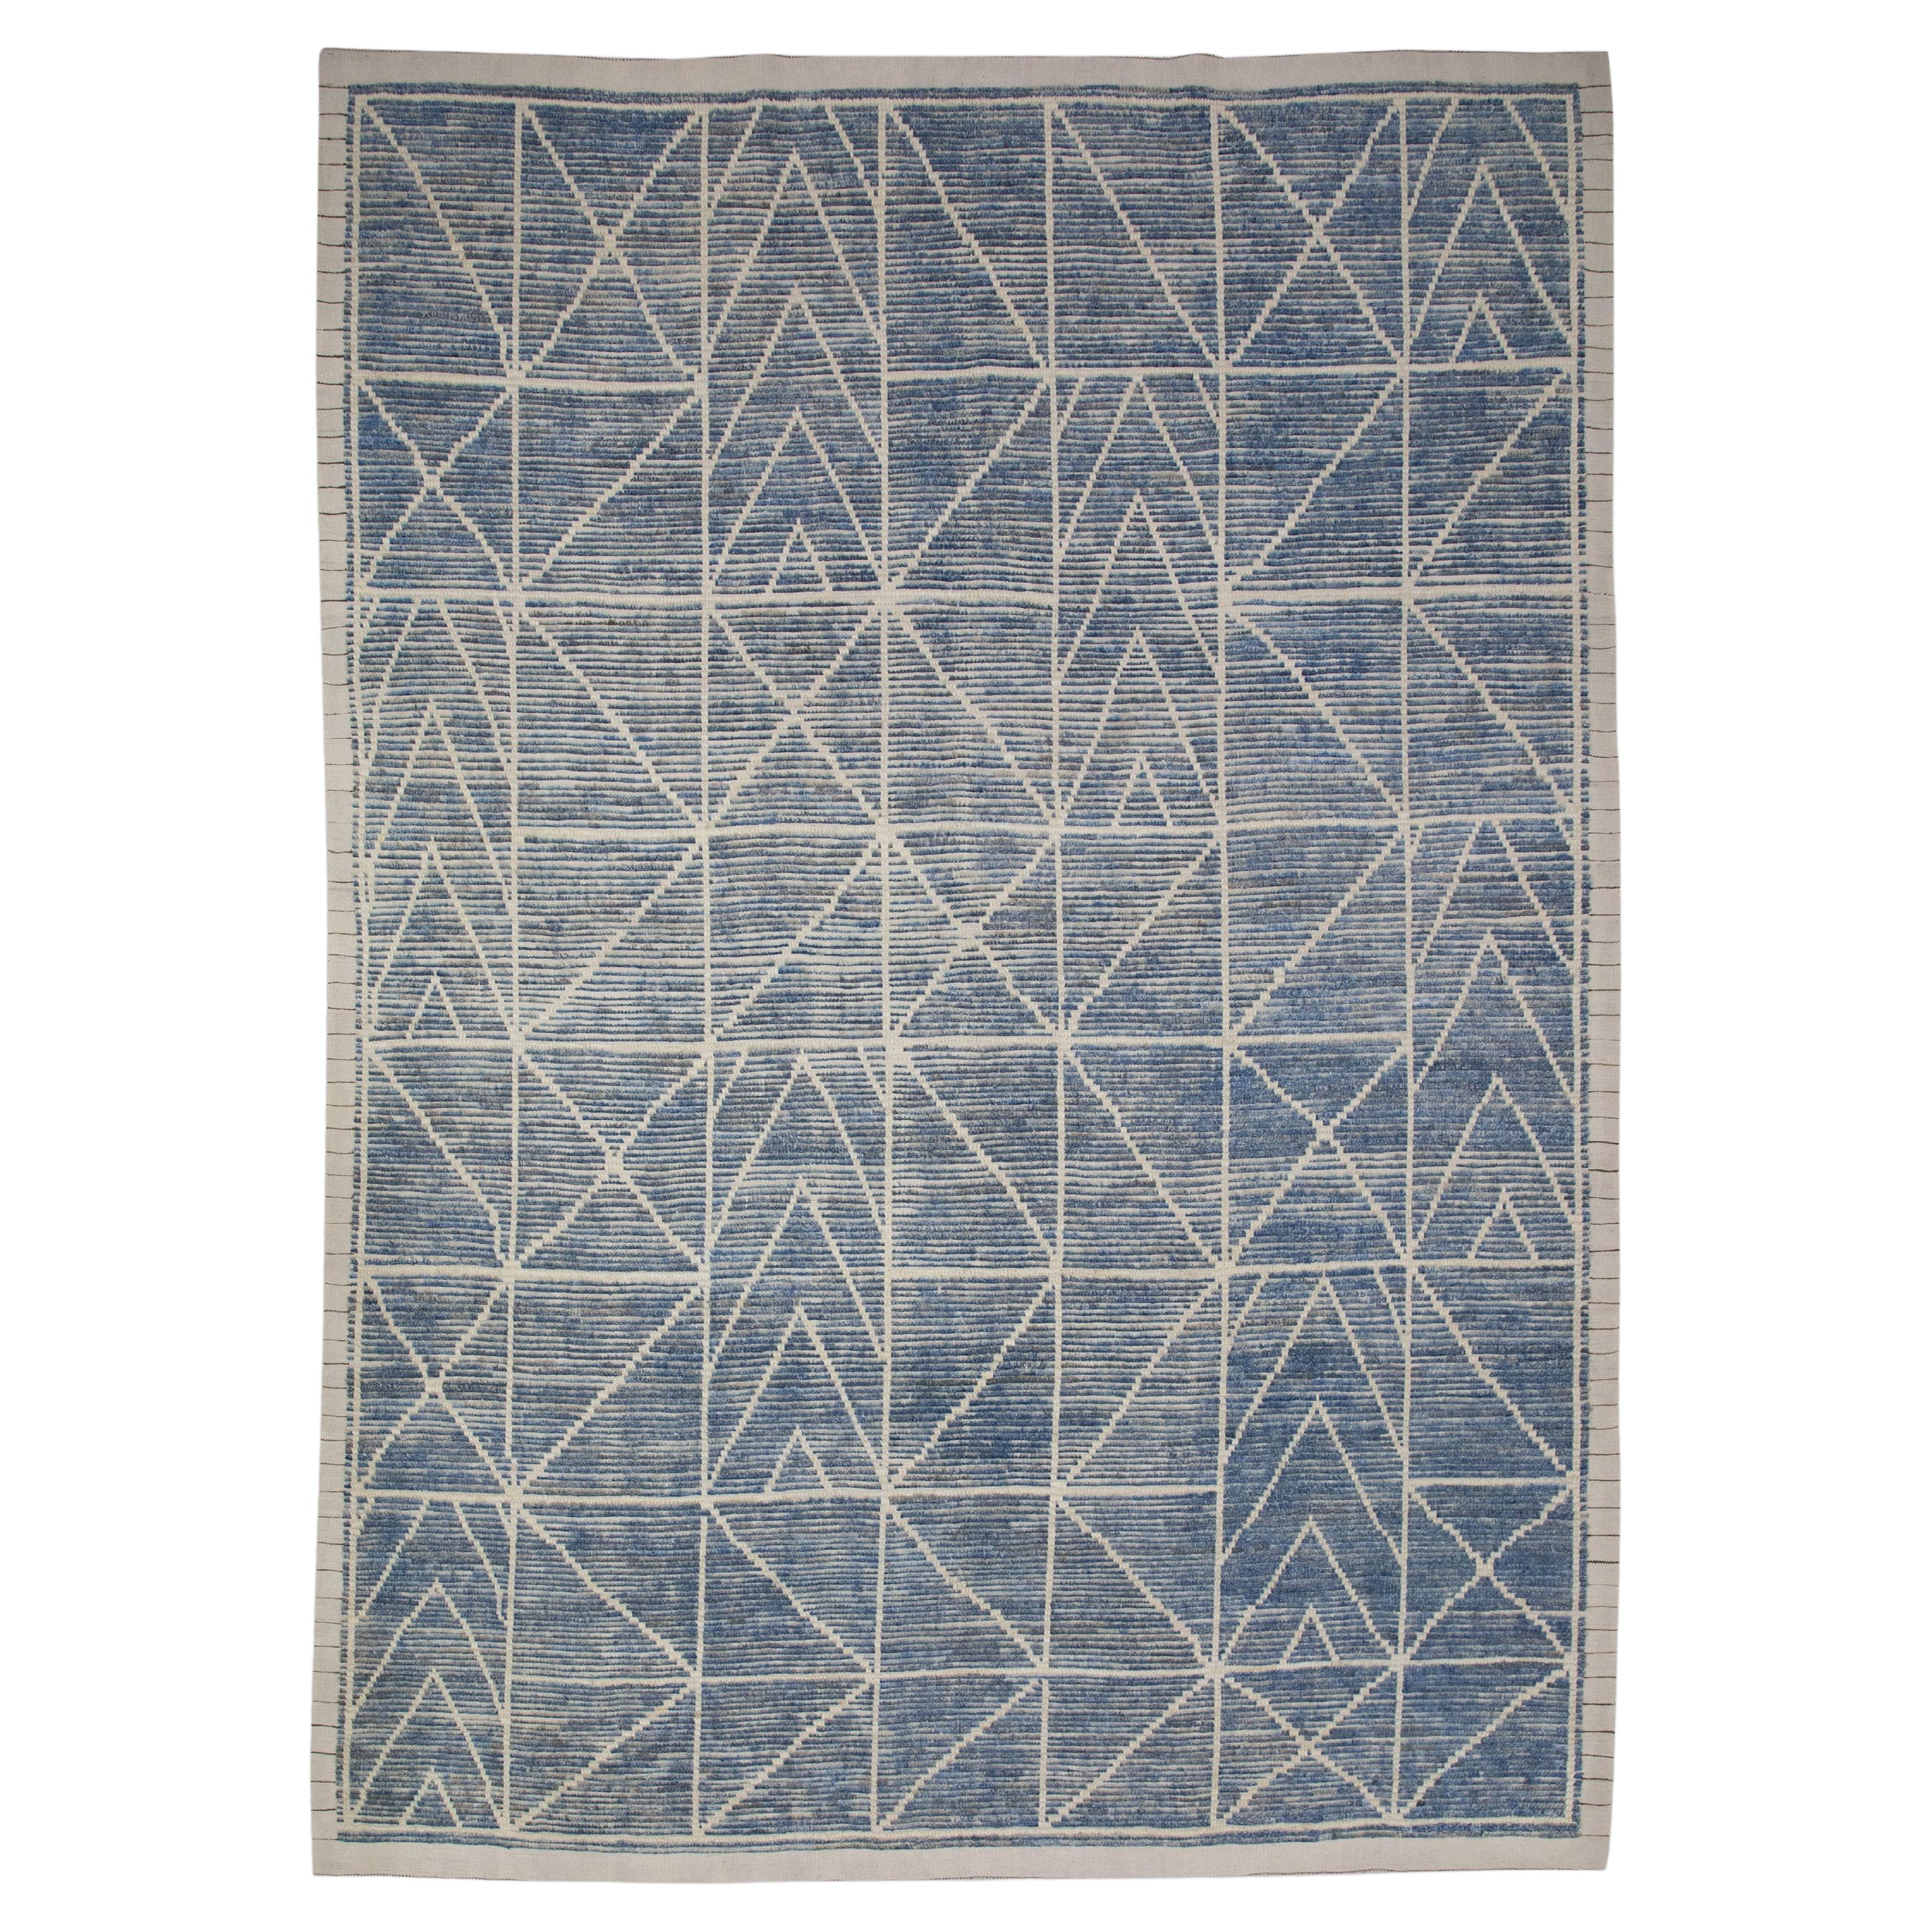 Tapis Tulu bleu en laine fait à la main au design géométrique 7'11" x 10'7".